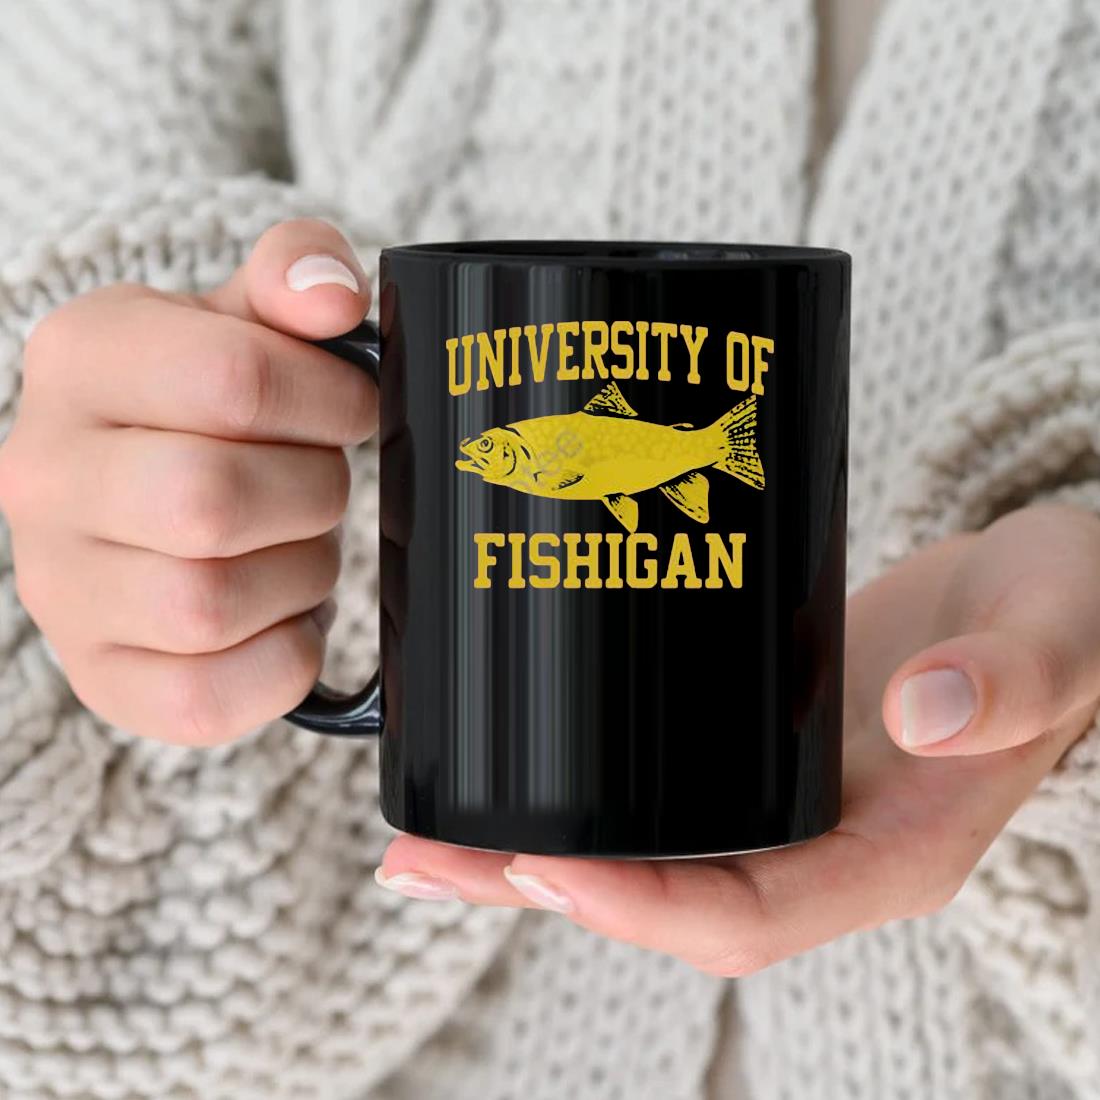 Randy Singer Phd University Of Fishigan Mug